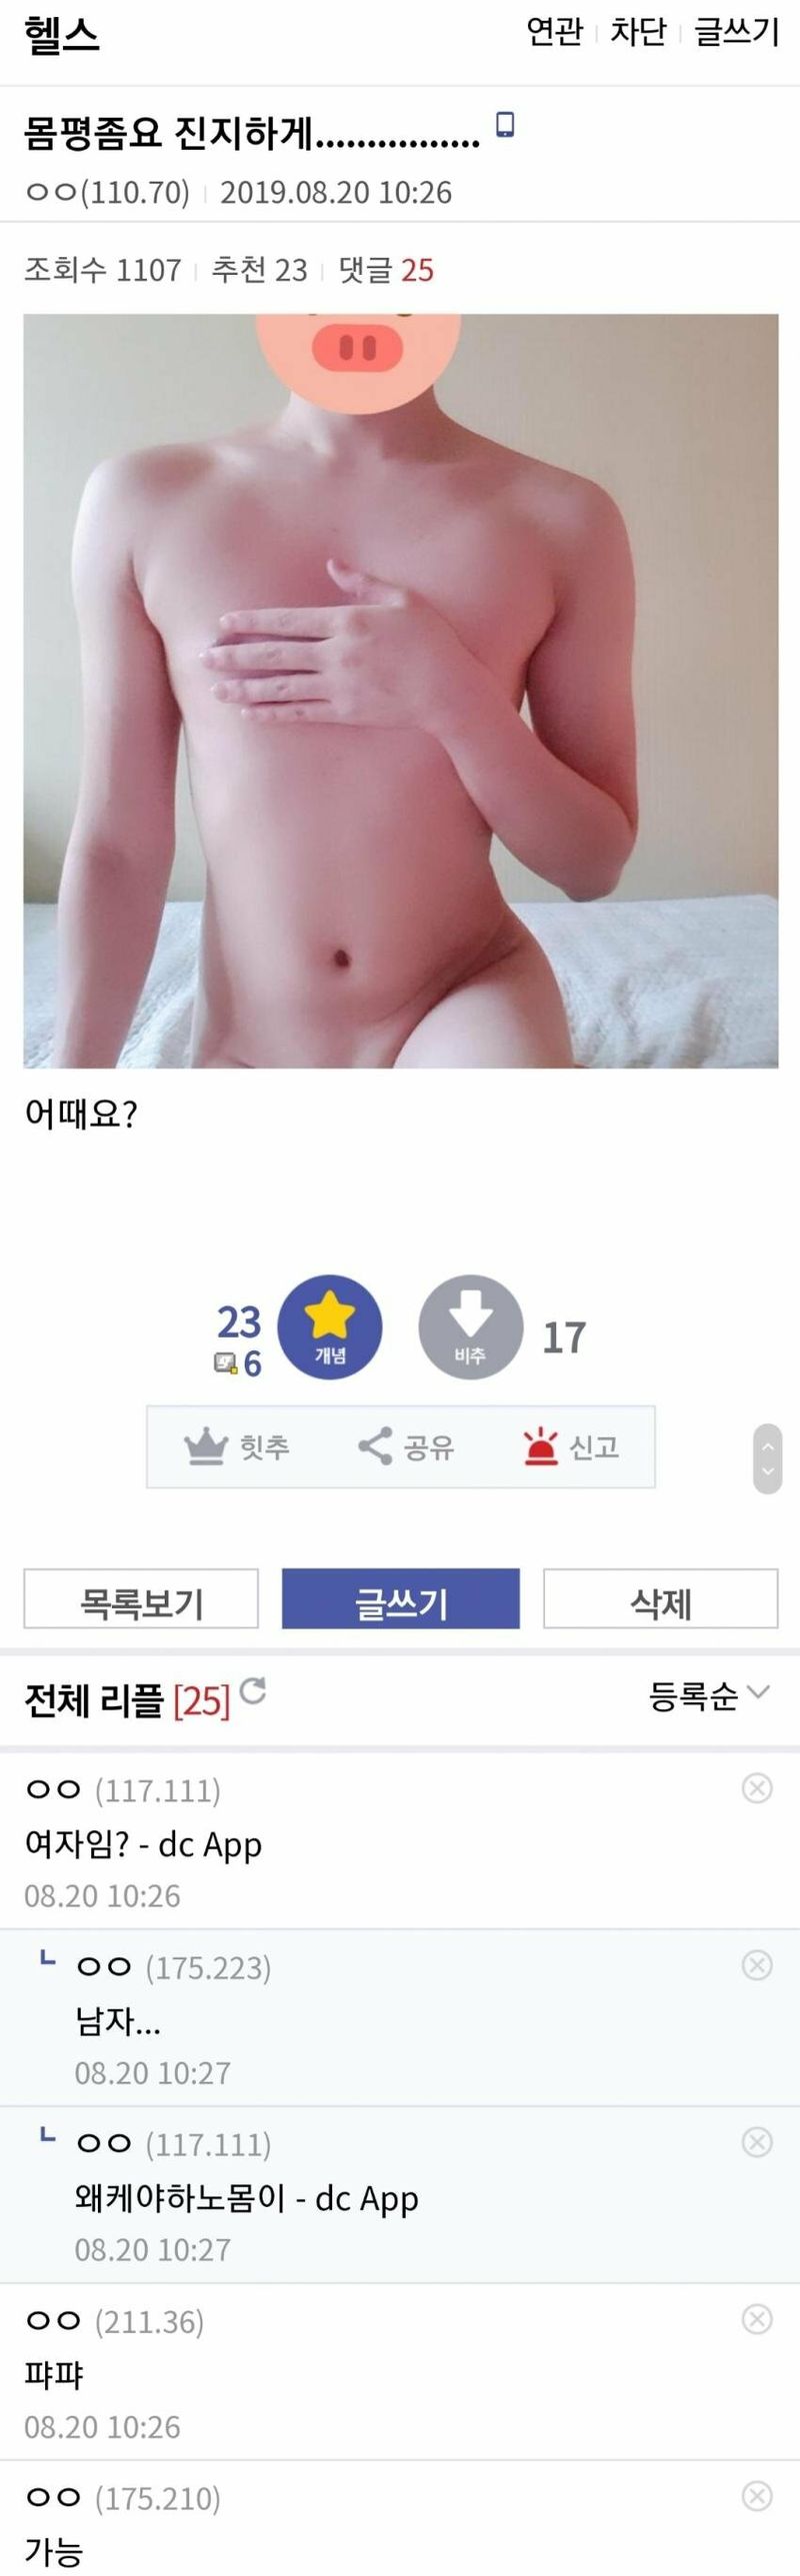 헬갤 몸인증 레전드 모음